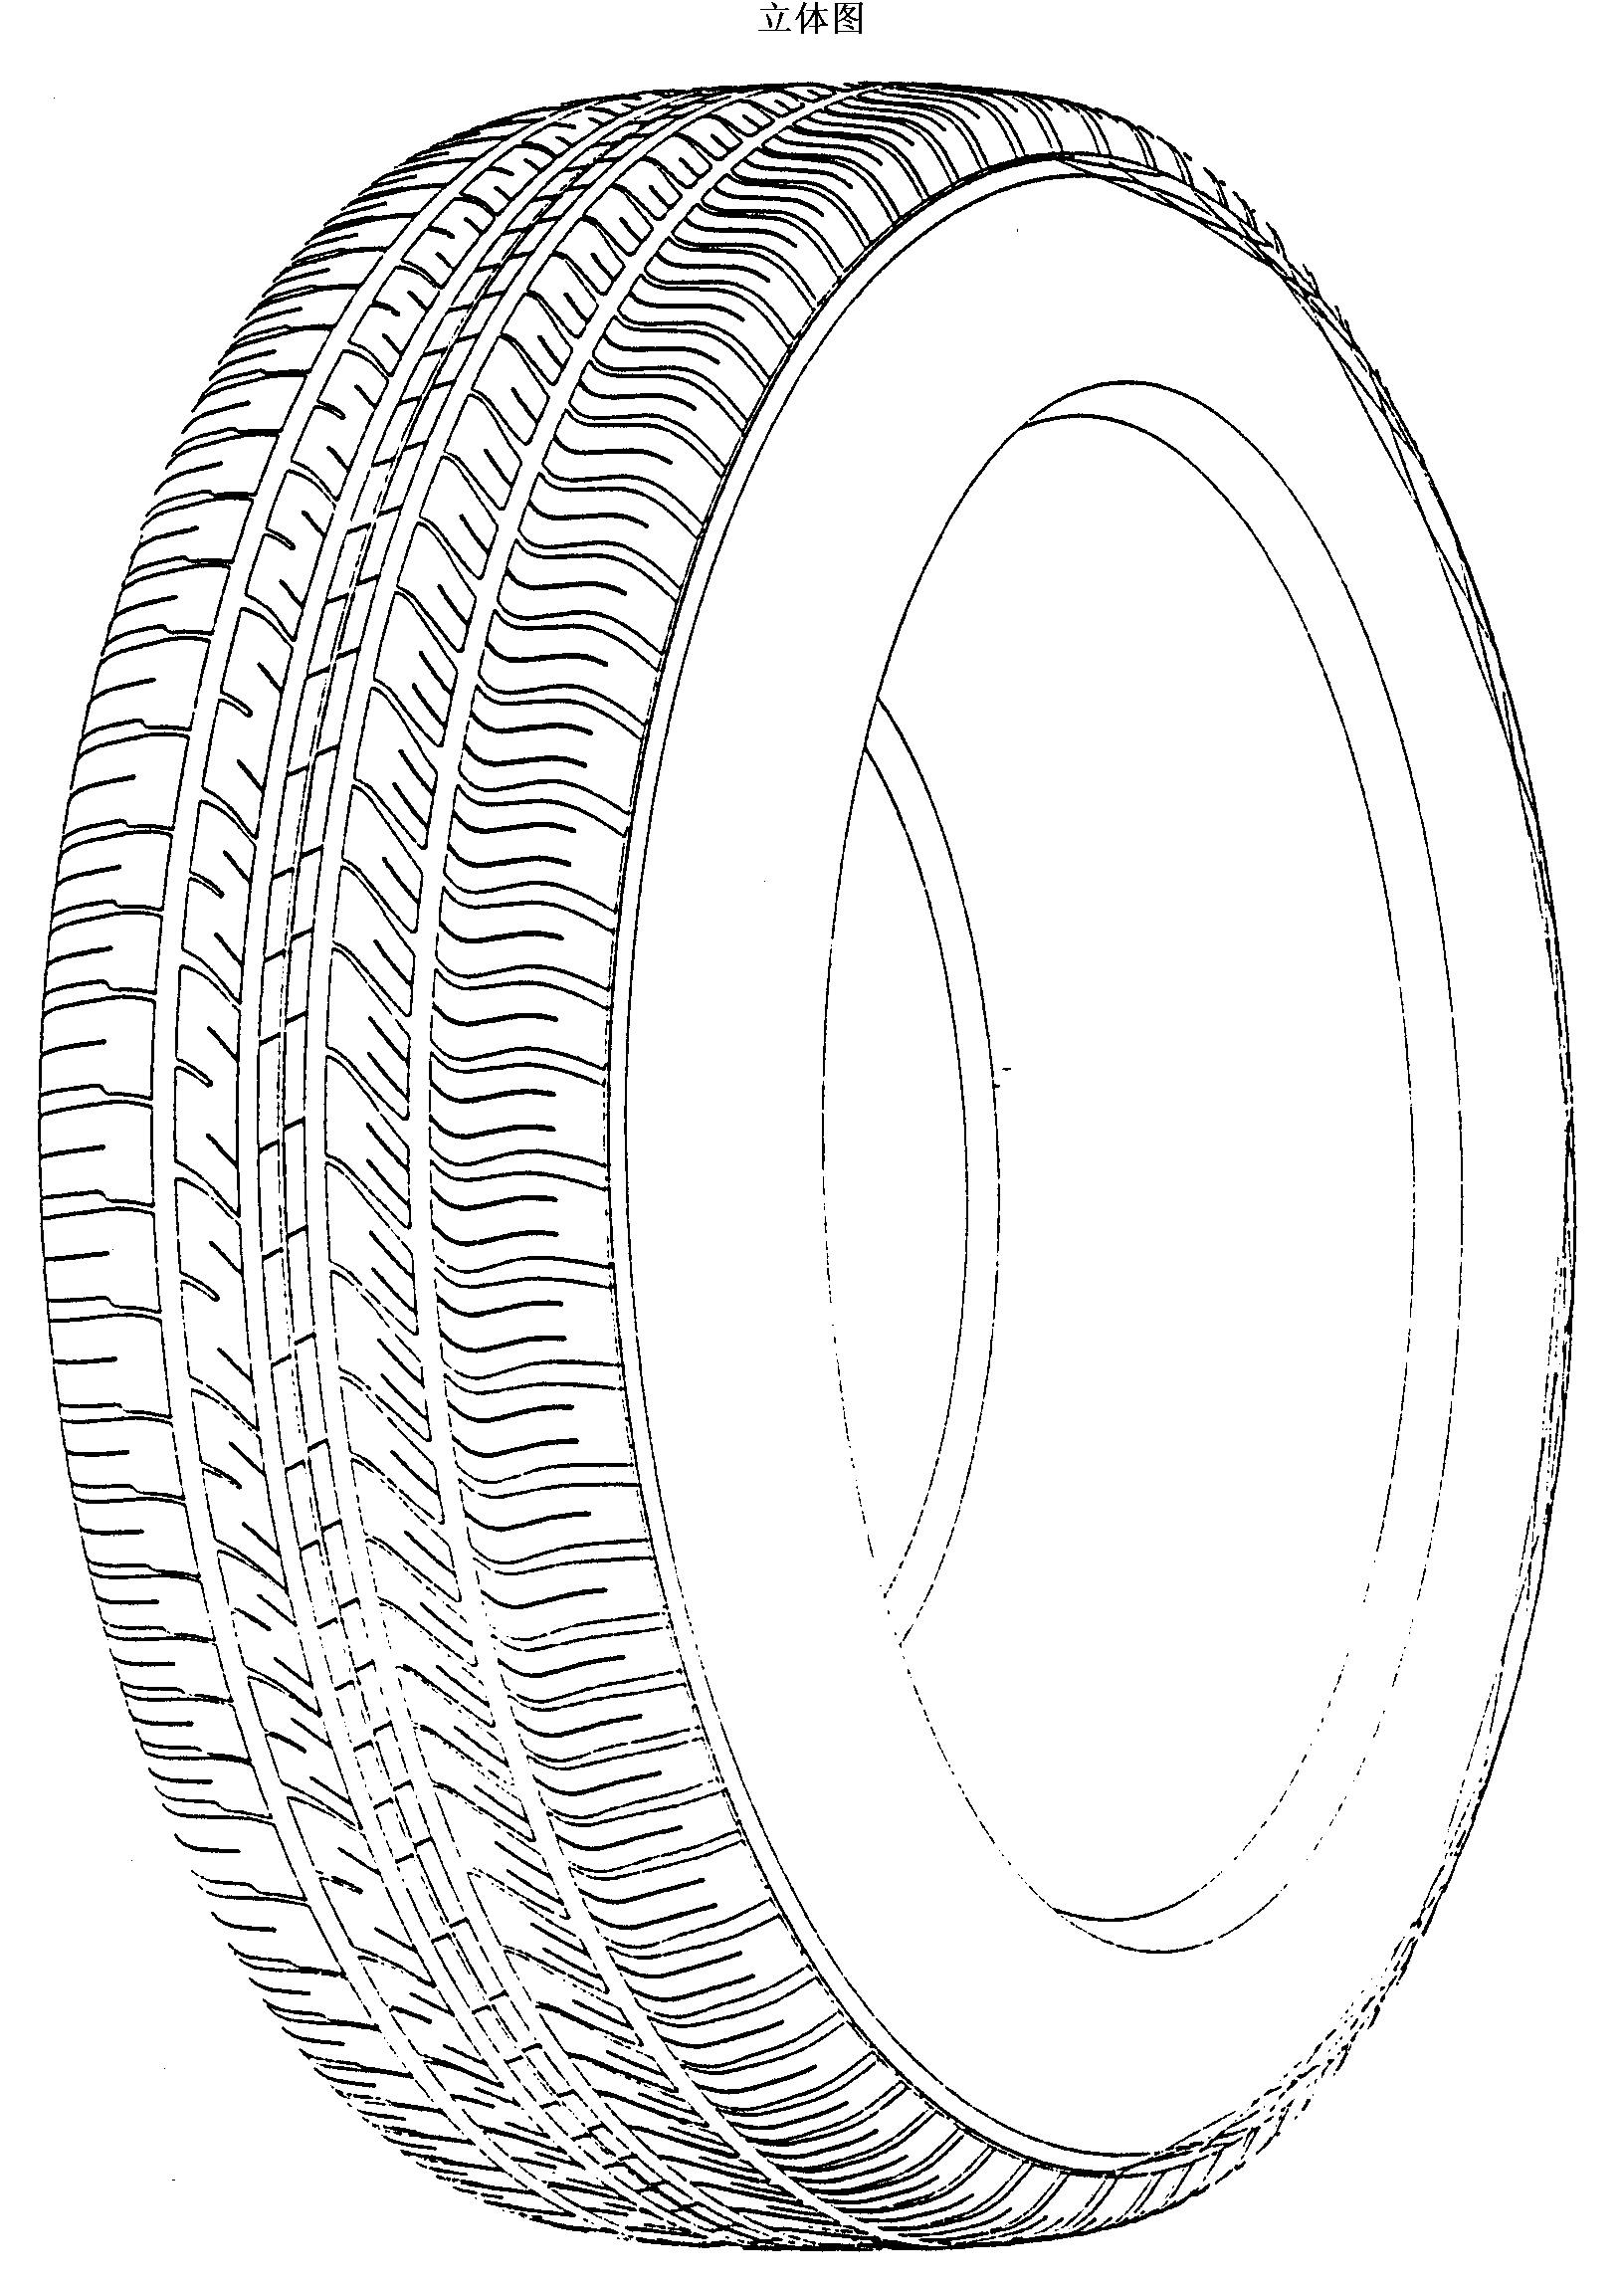 公开(公告)号 cn3360180d 公开(公告)日 2004-03-31 发明名称 轮胎